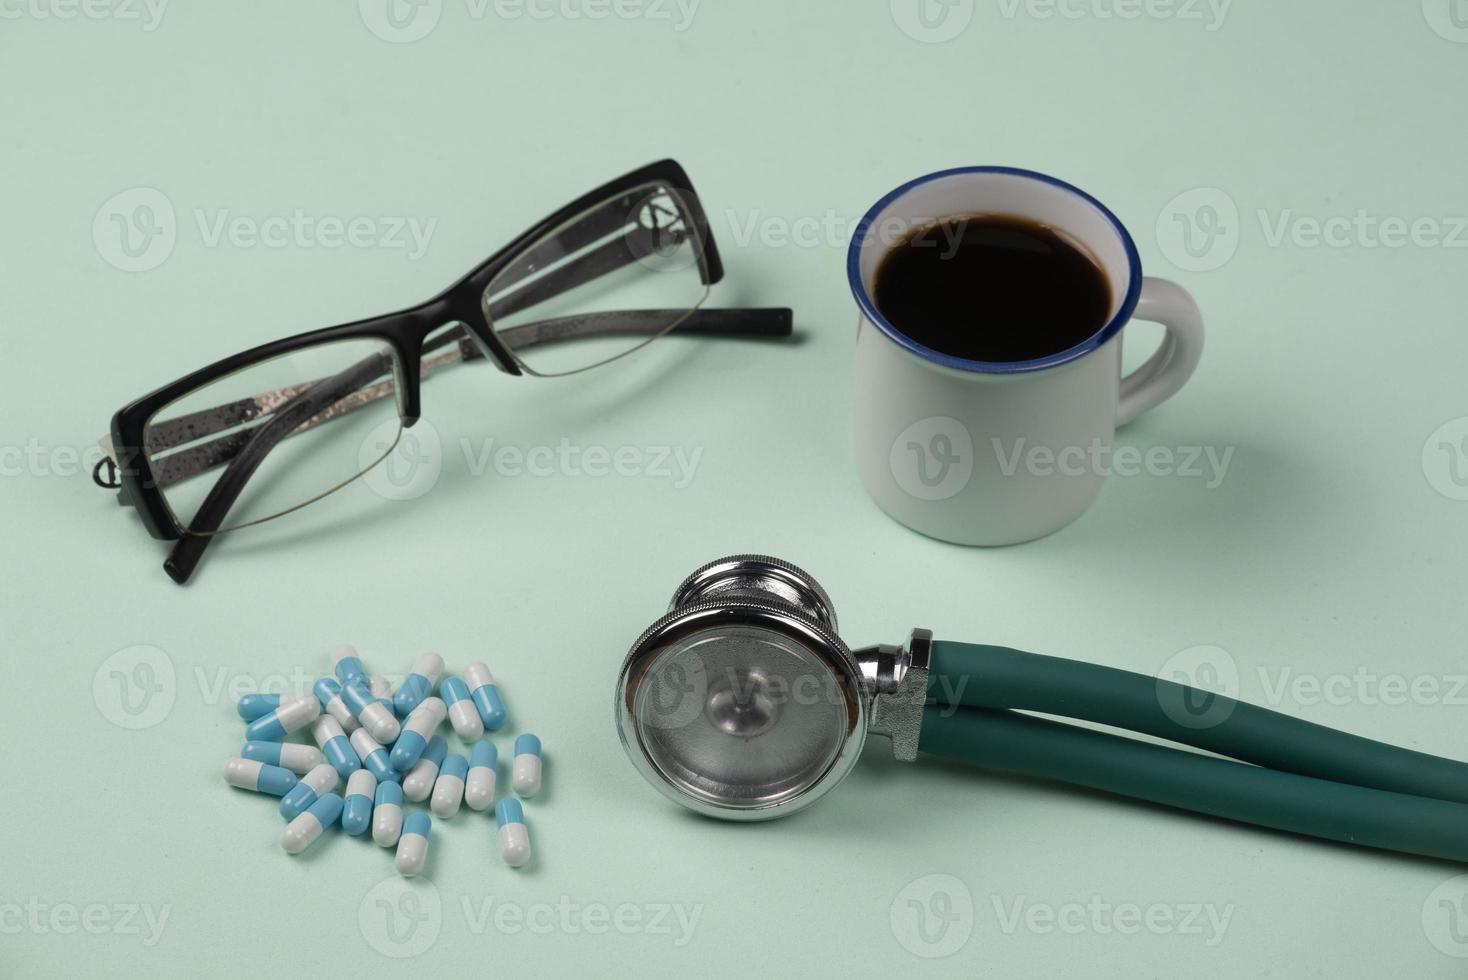 medicinsk objekt på ljus grön bakgrund, med glasögon, biljard, stetoskop och kopp av kaffe foto